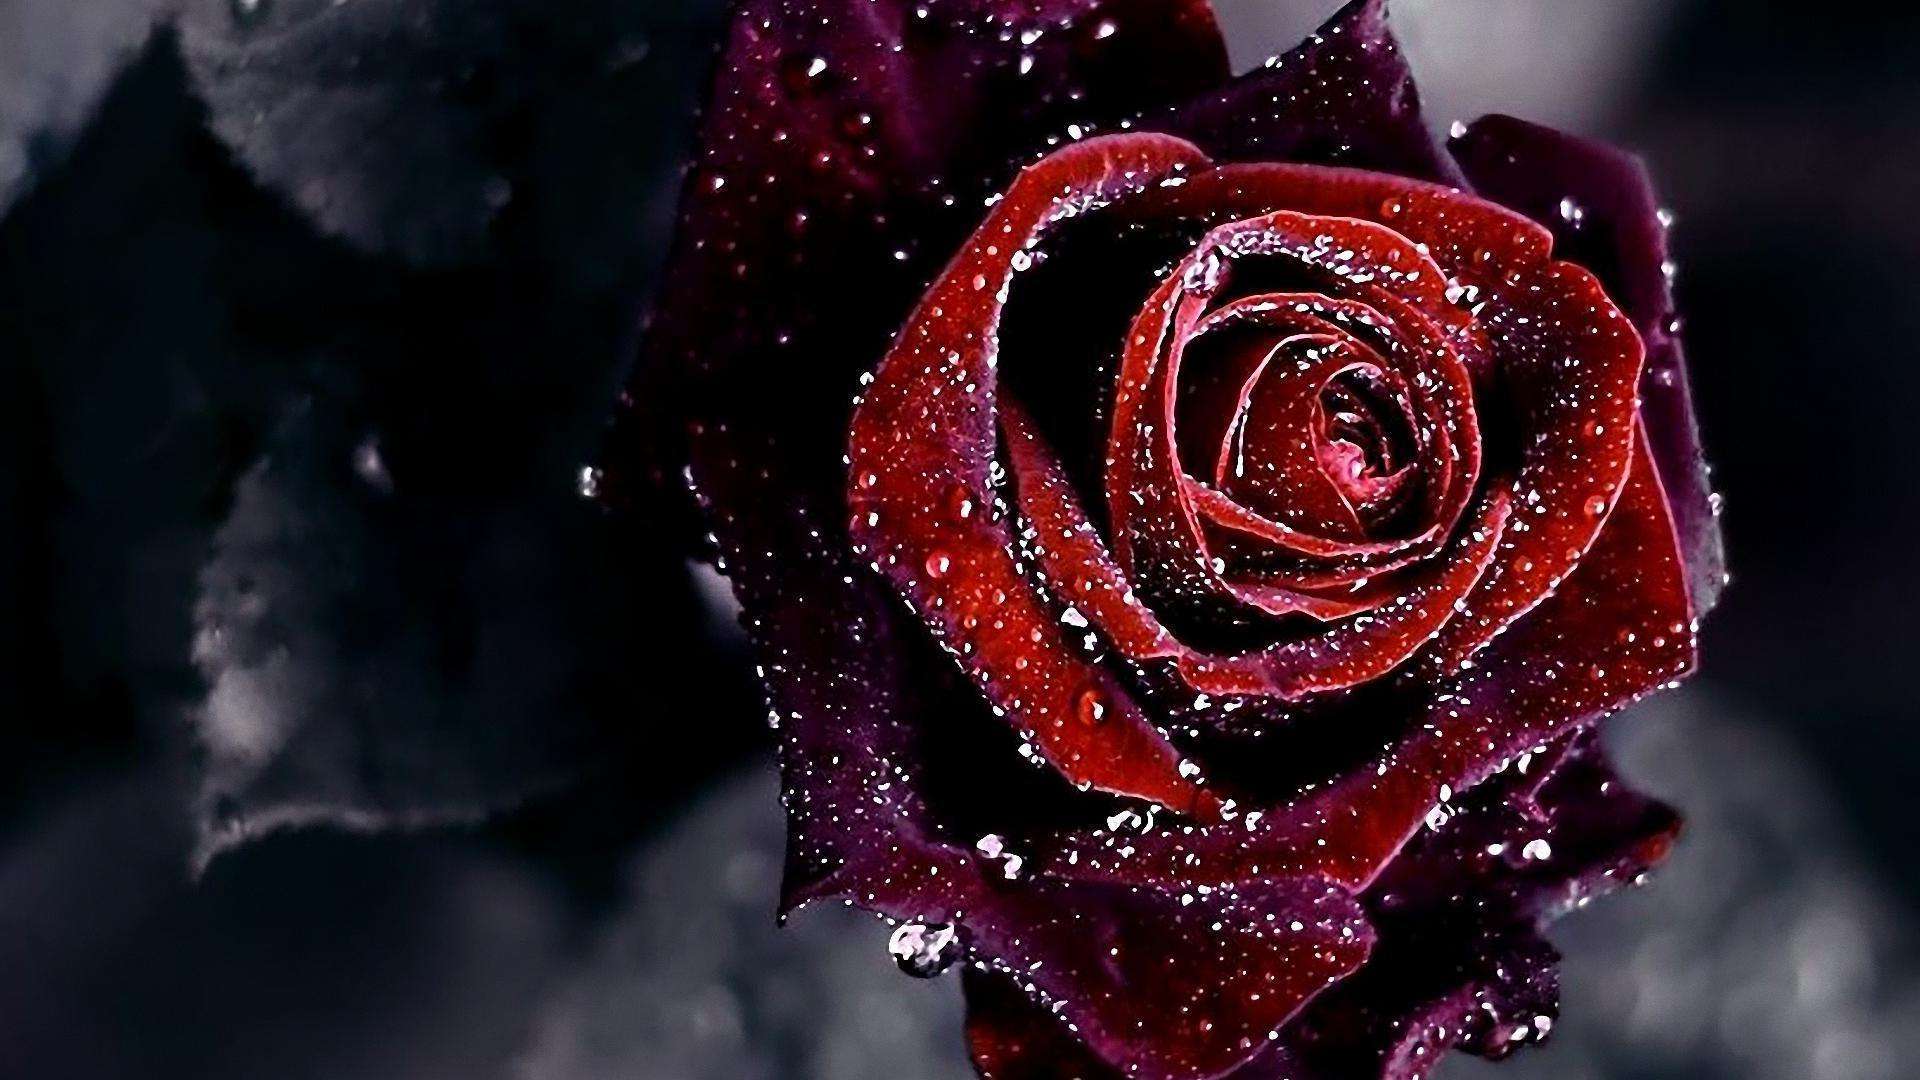 Rose Desktop Wallpaper